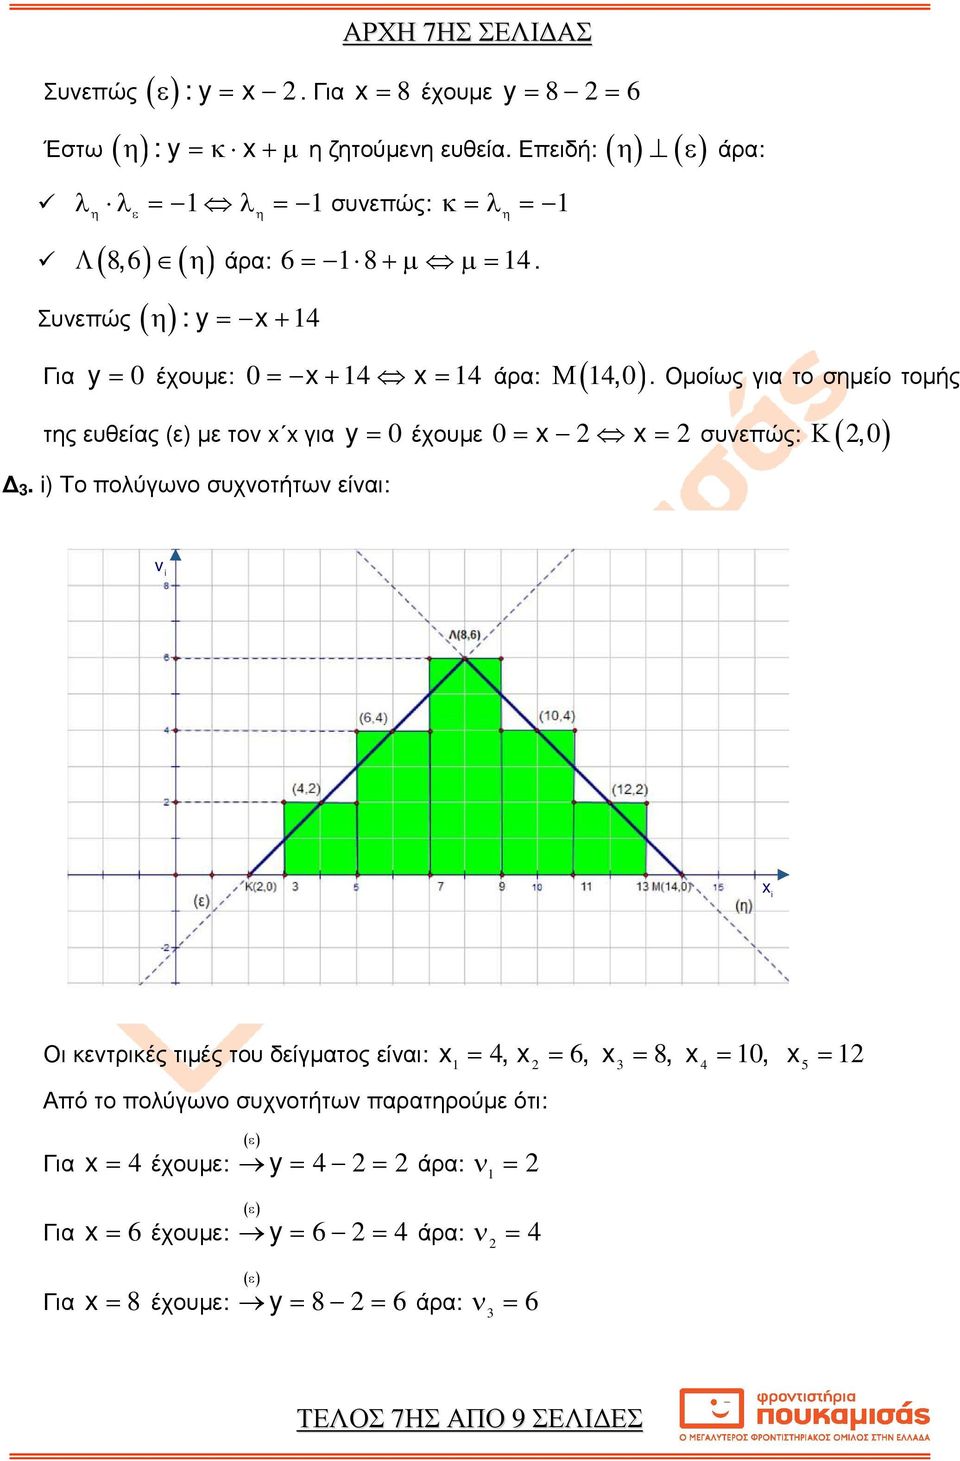 άρα: y = έχουµε Οµοίως για το σηµείο τοµής = = συνεπώς: Κ (, ) v Οι κεντρικές τιµές του δείγµατος είναι: =, = 6, = 8, =, = Από το πολύγωνο συχνοτήτων